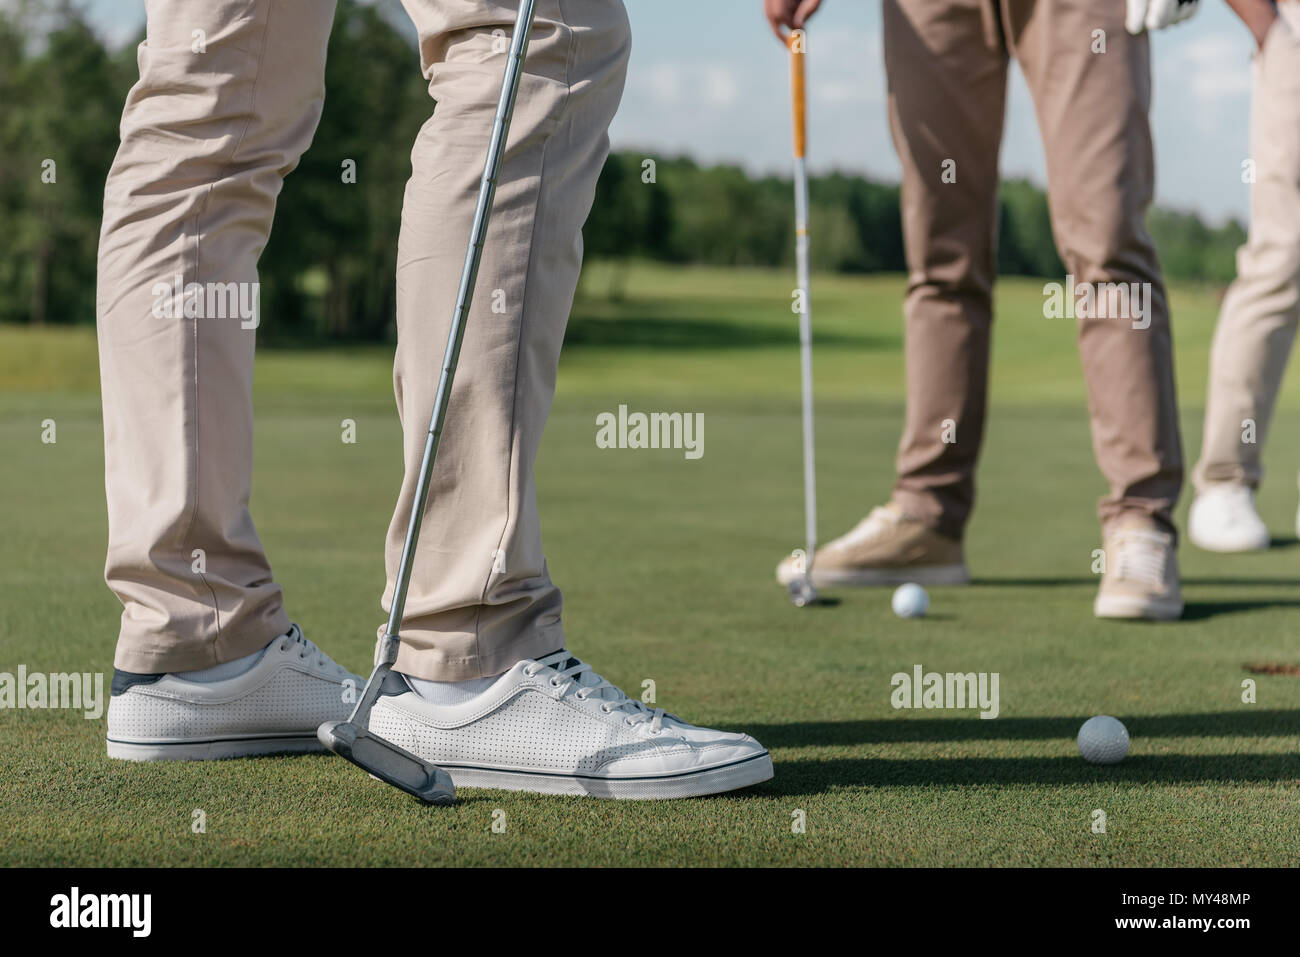 Captura recortada de jugadores profesionales de golf preparándose para la filmación de una bola Foto de stock